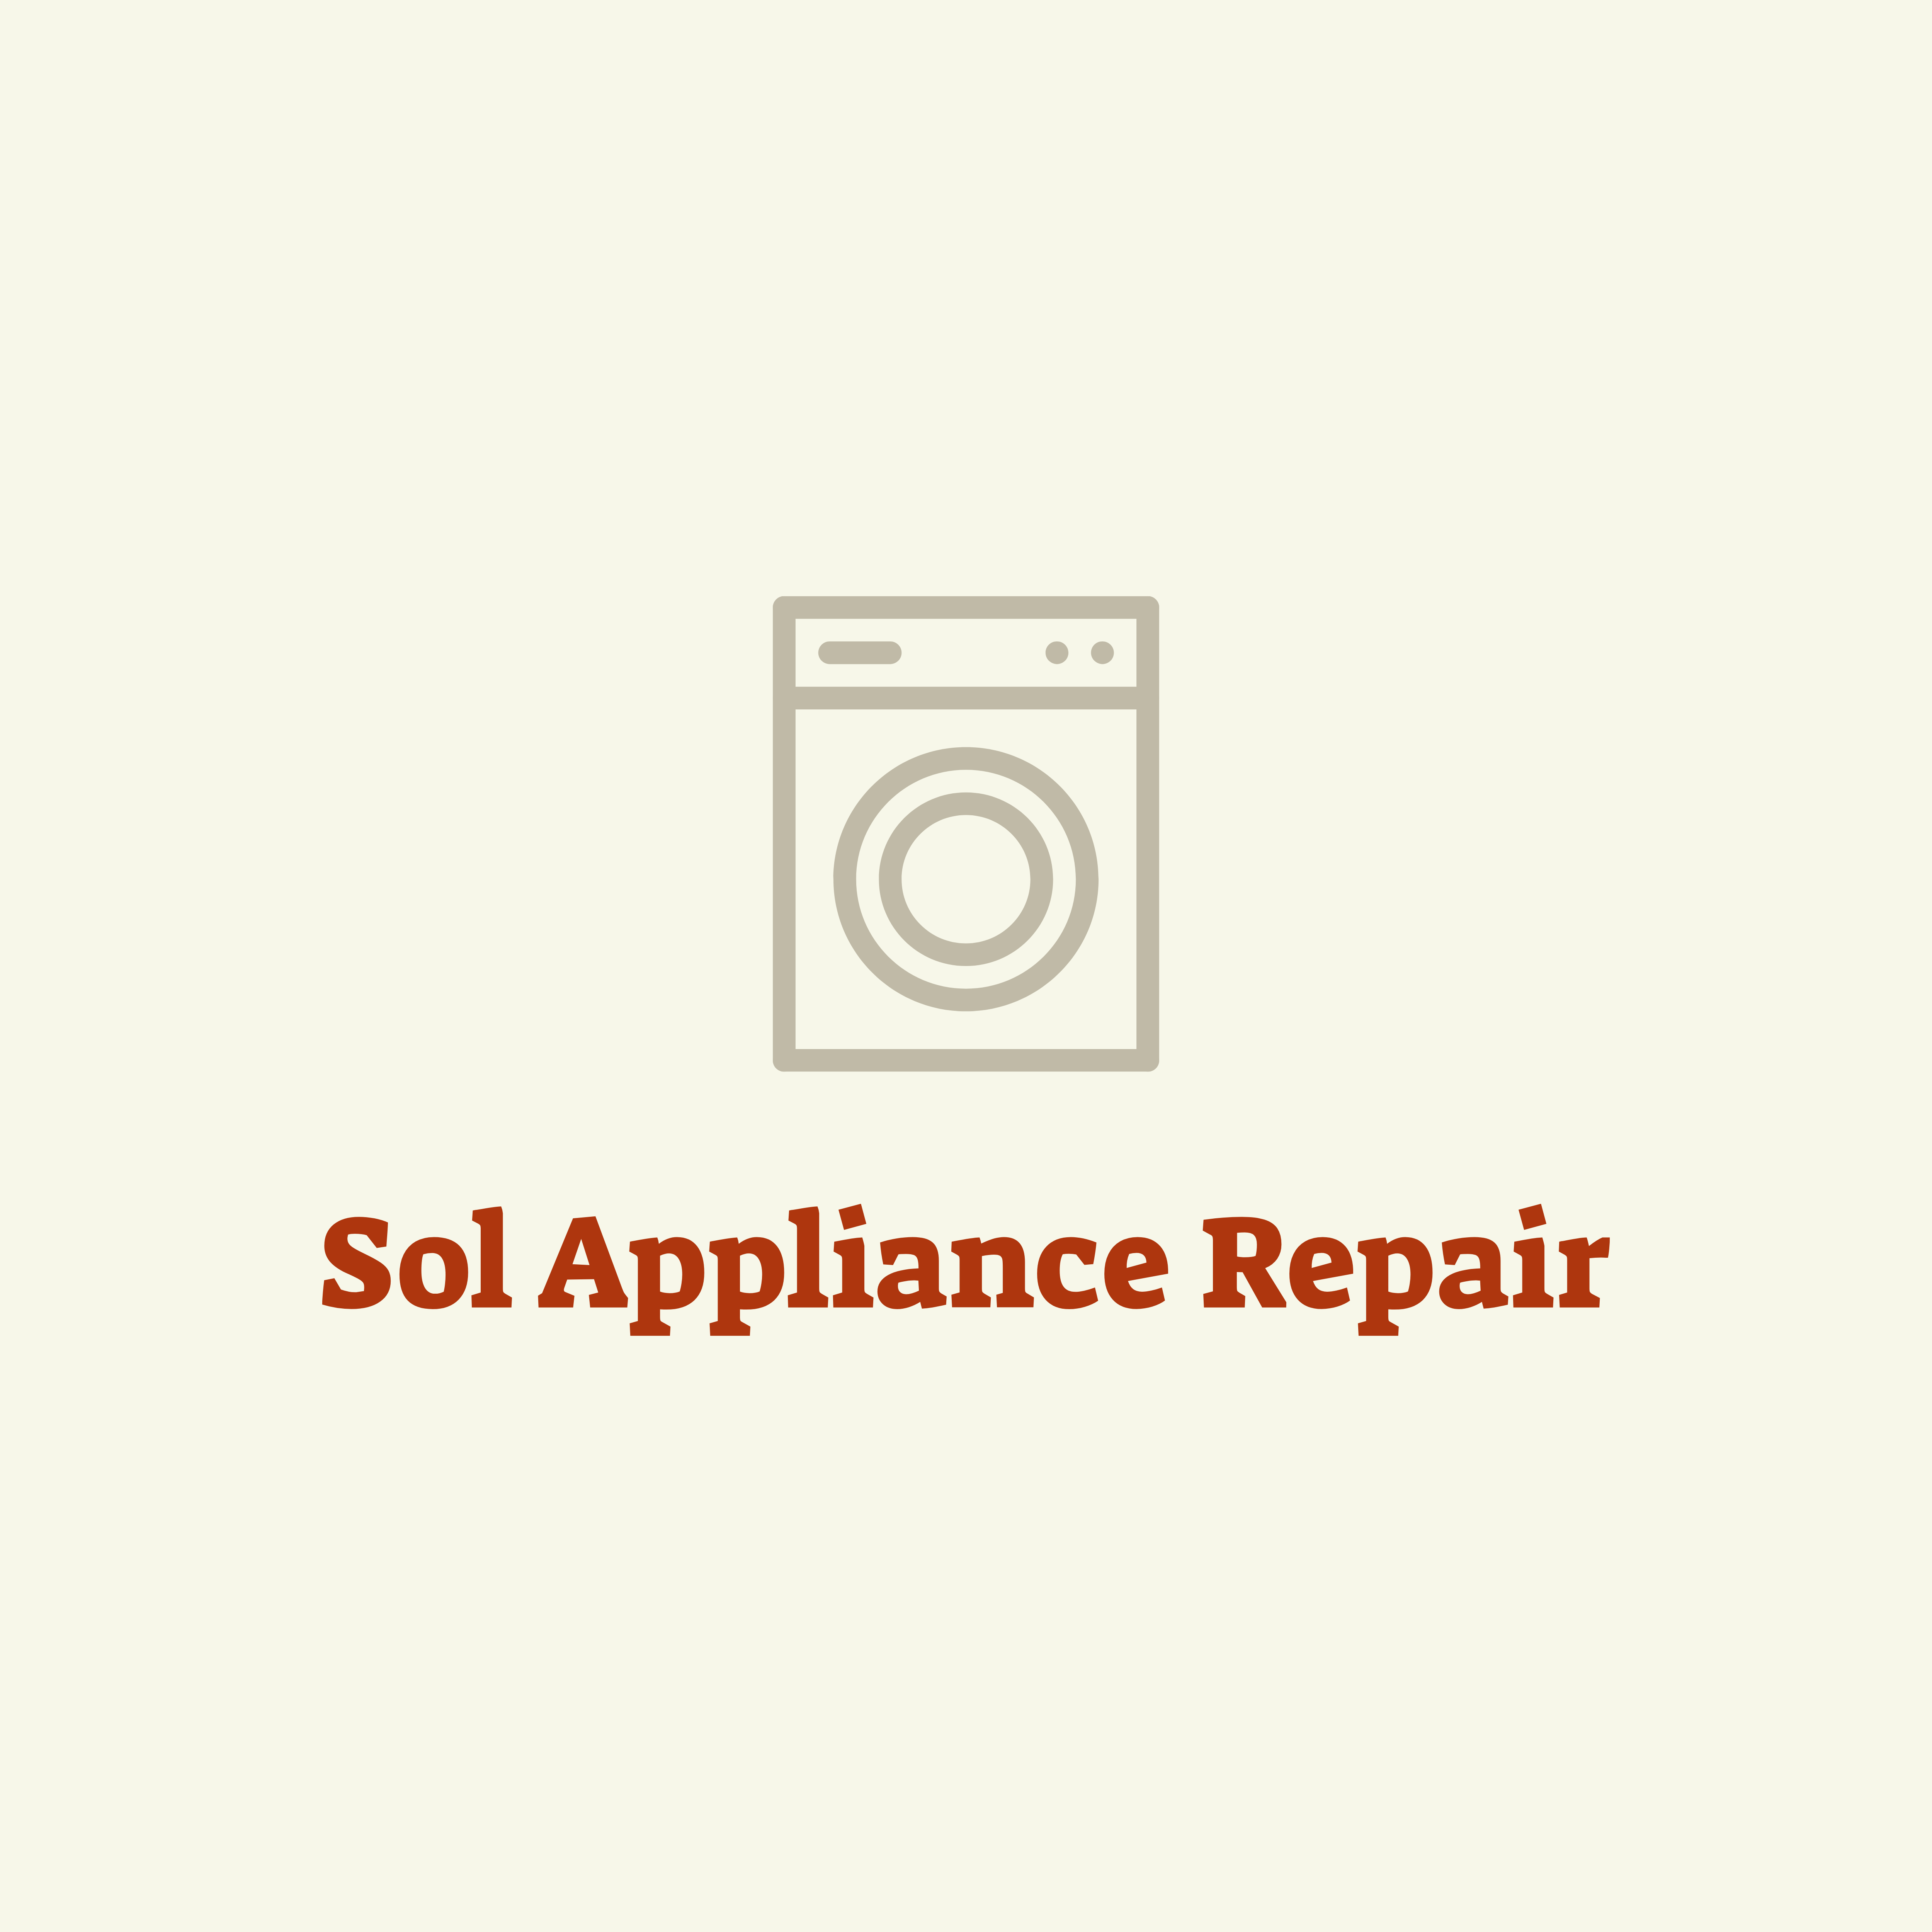 Sol Appliance Repair Logo